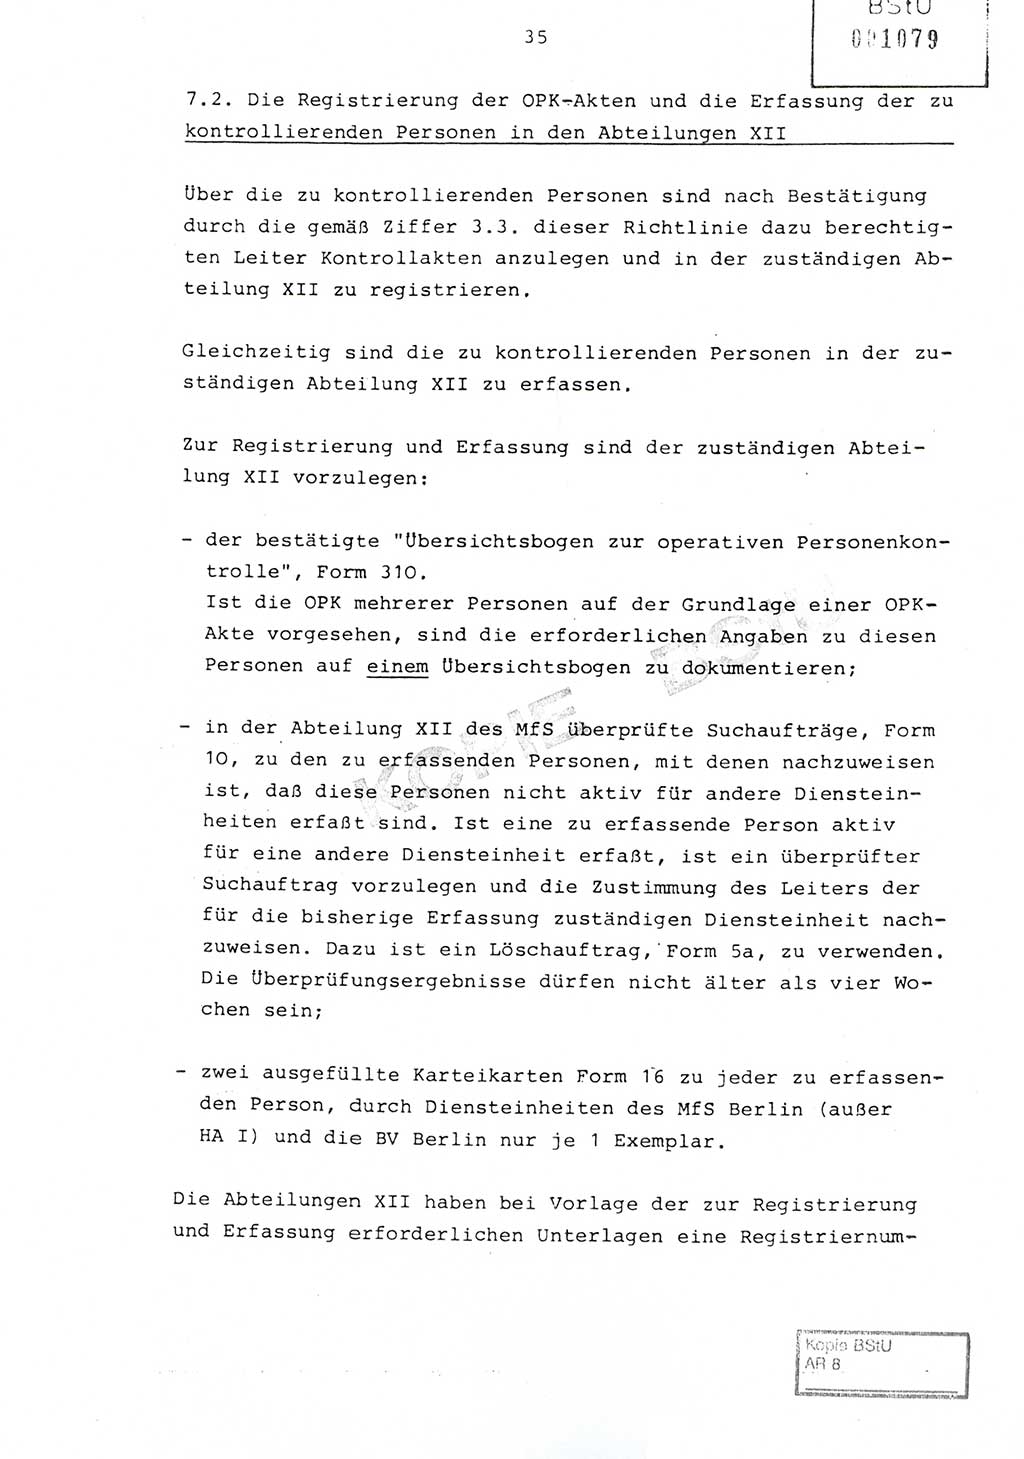 Richtlinie Nr. 1/81 über die operative Personenkontrolle (OPK), Ministerium für Staatssicherheit (MfS) [Deutsche Demokratische Republik (DDR)], Der Minister, Geheime Verschlußsache (GVS) ooo8-10/81, Berlin 1981, Blatt 35 (RL 1/81 OPK DDR MfS Min. GVS ooo8-10/81 1981, Bl. 35)